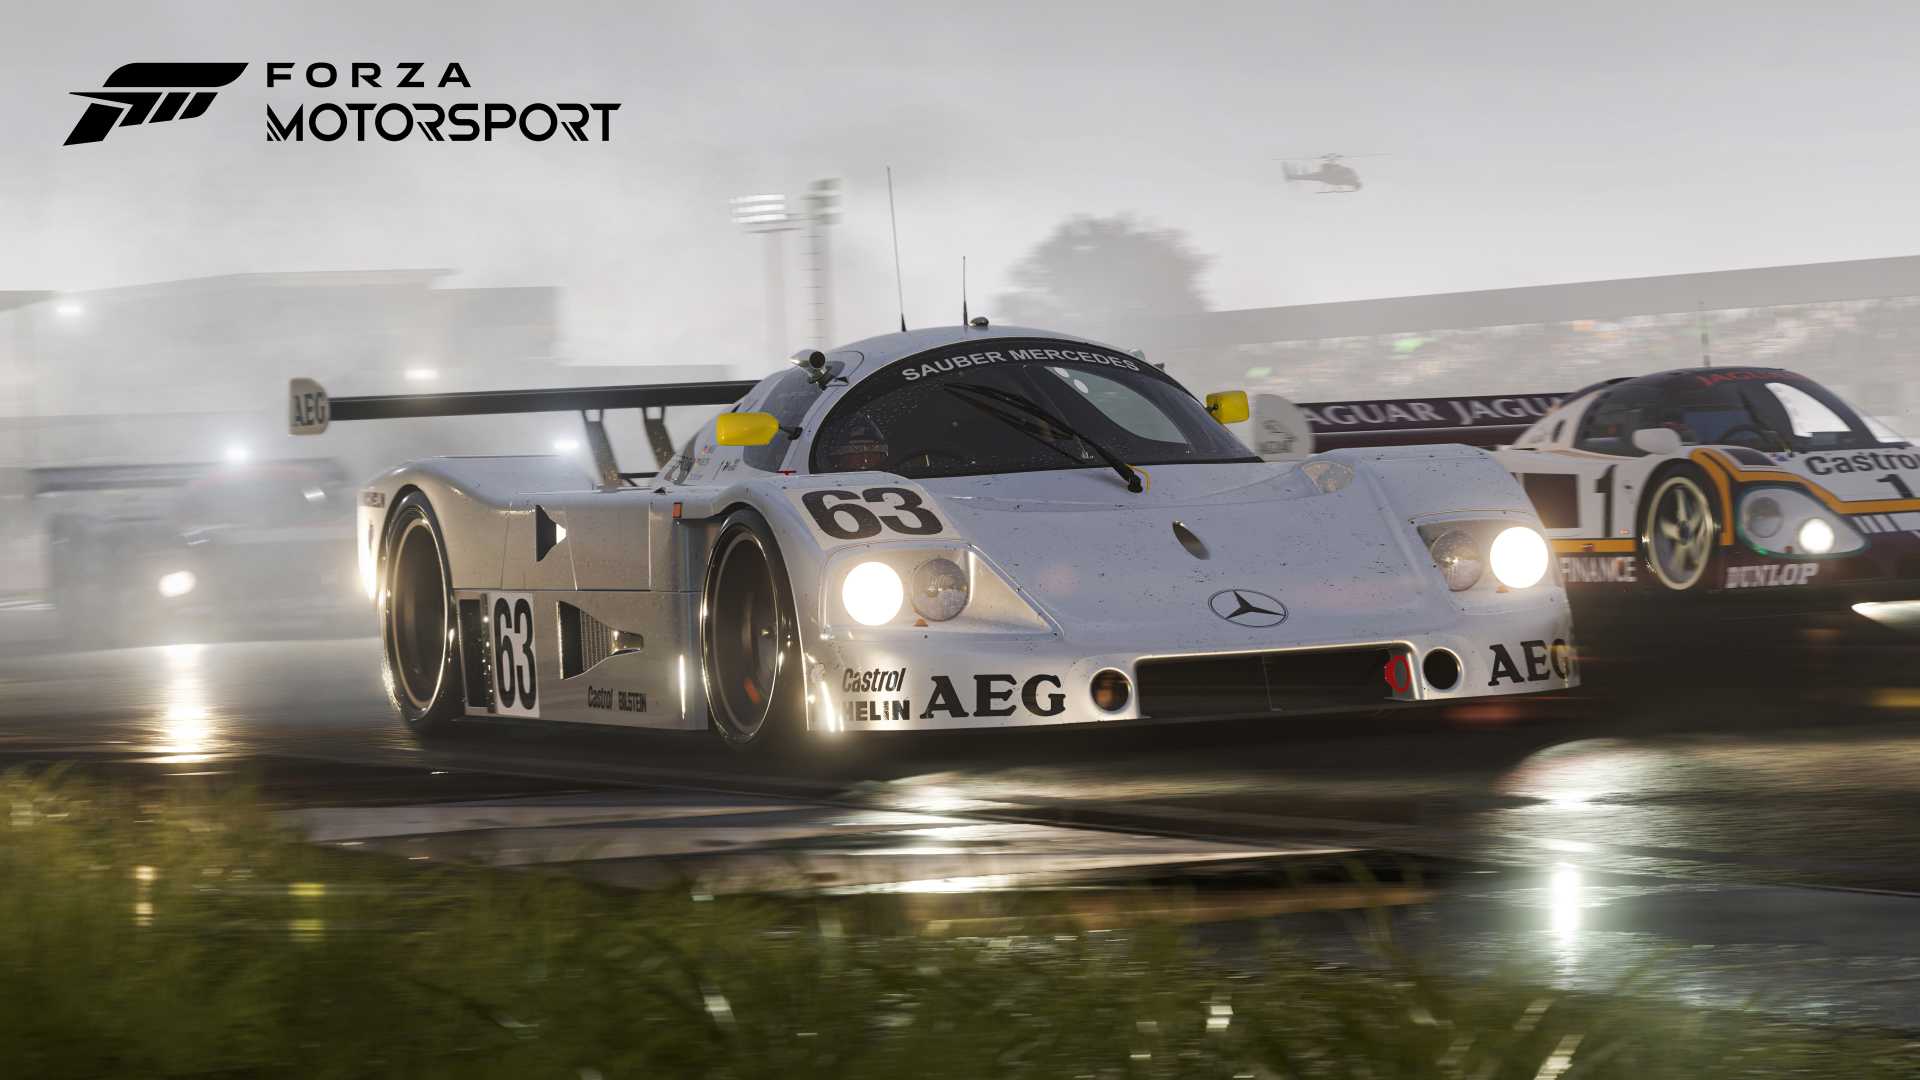 Forza_Motorsport-XboxDeveloperDirectShowcase2023